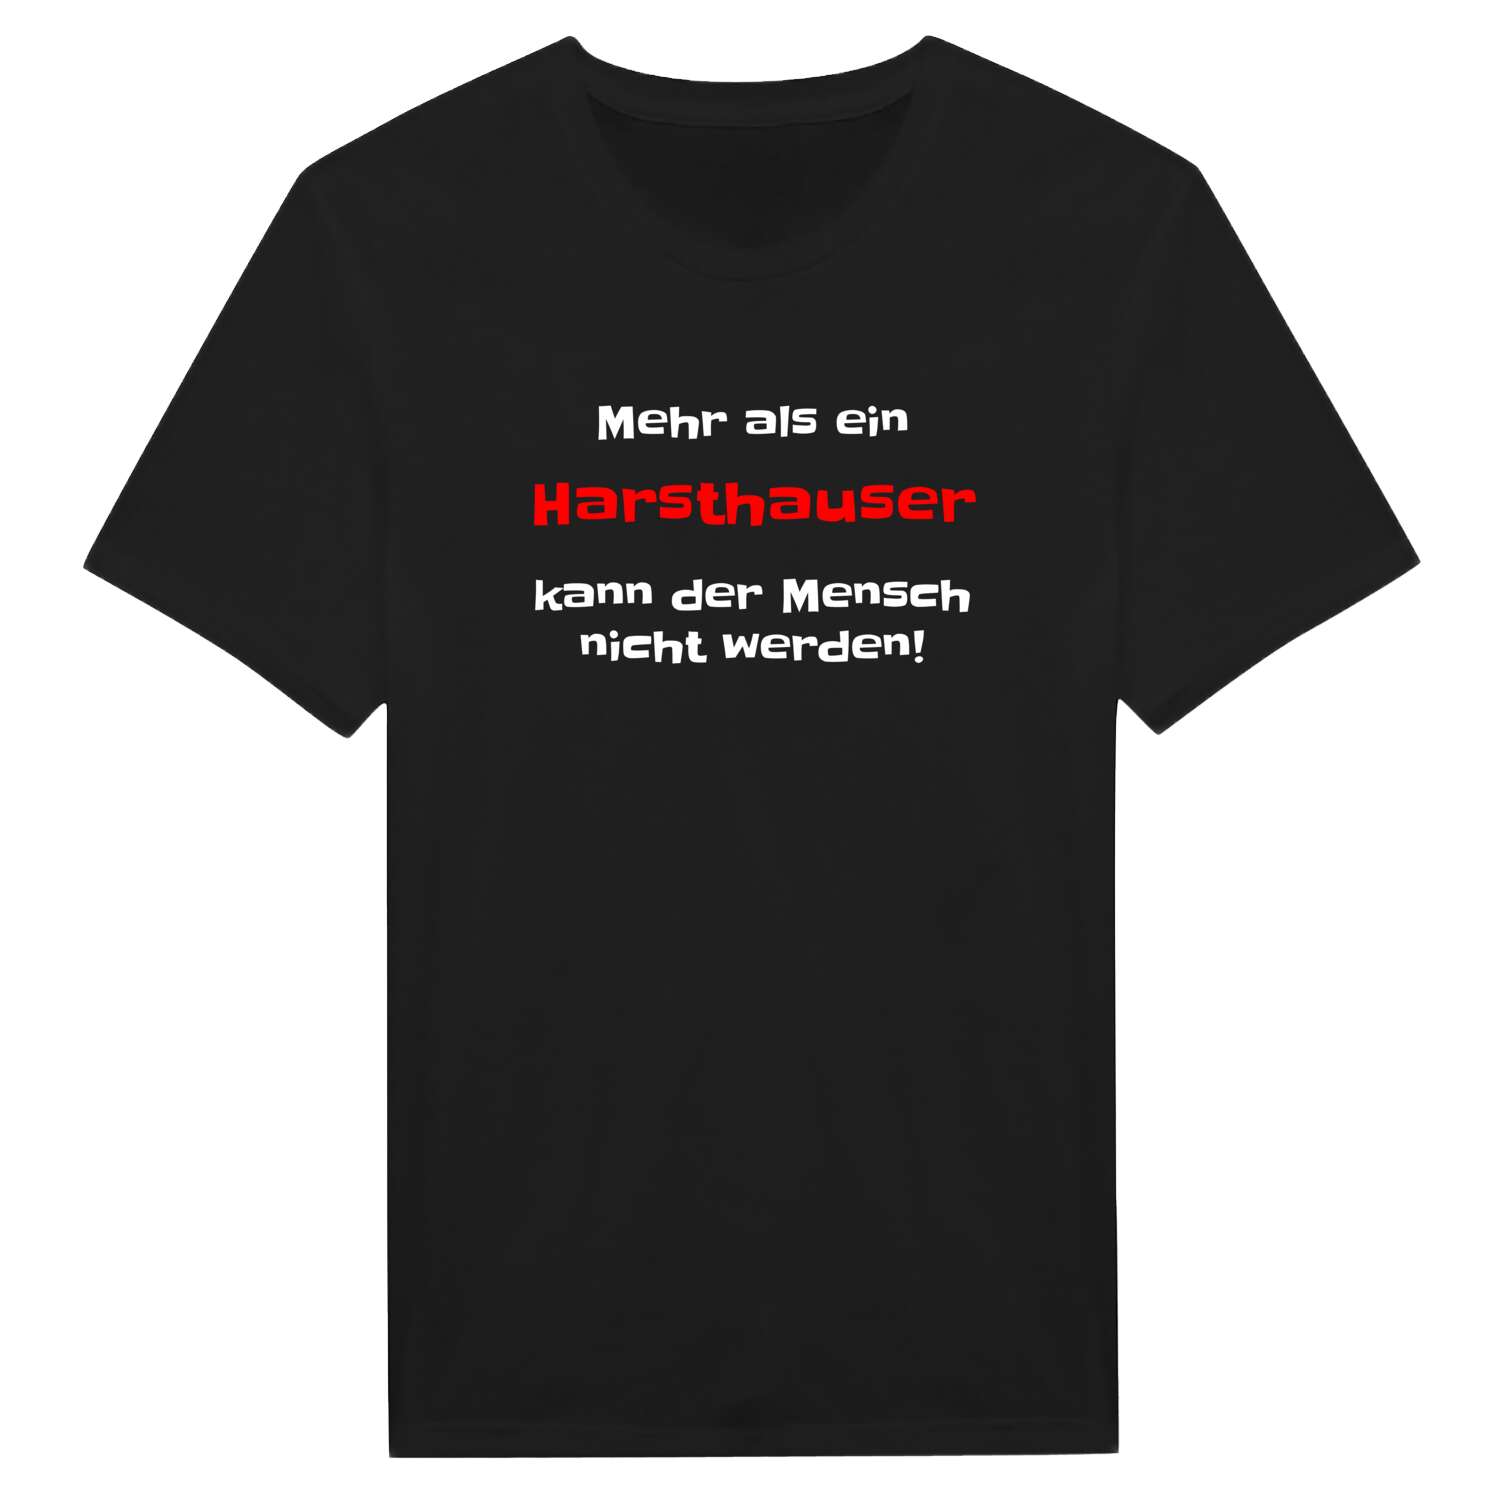 Harsthaus T-Shirt »Mehr als ein«